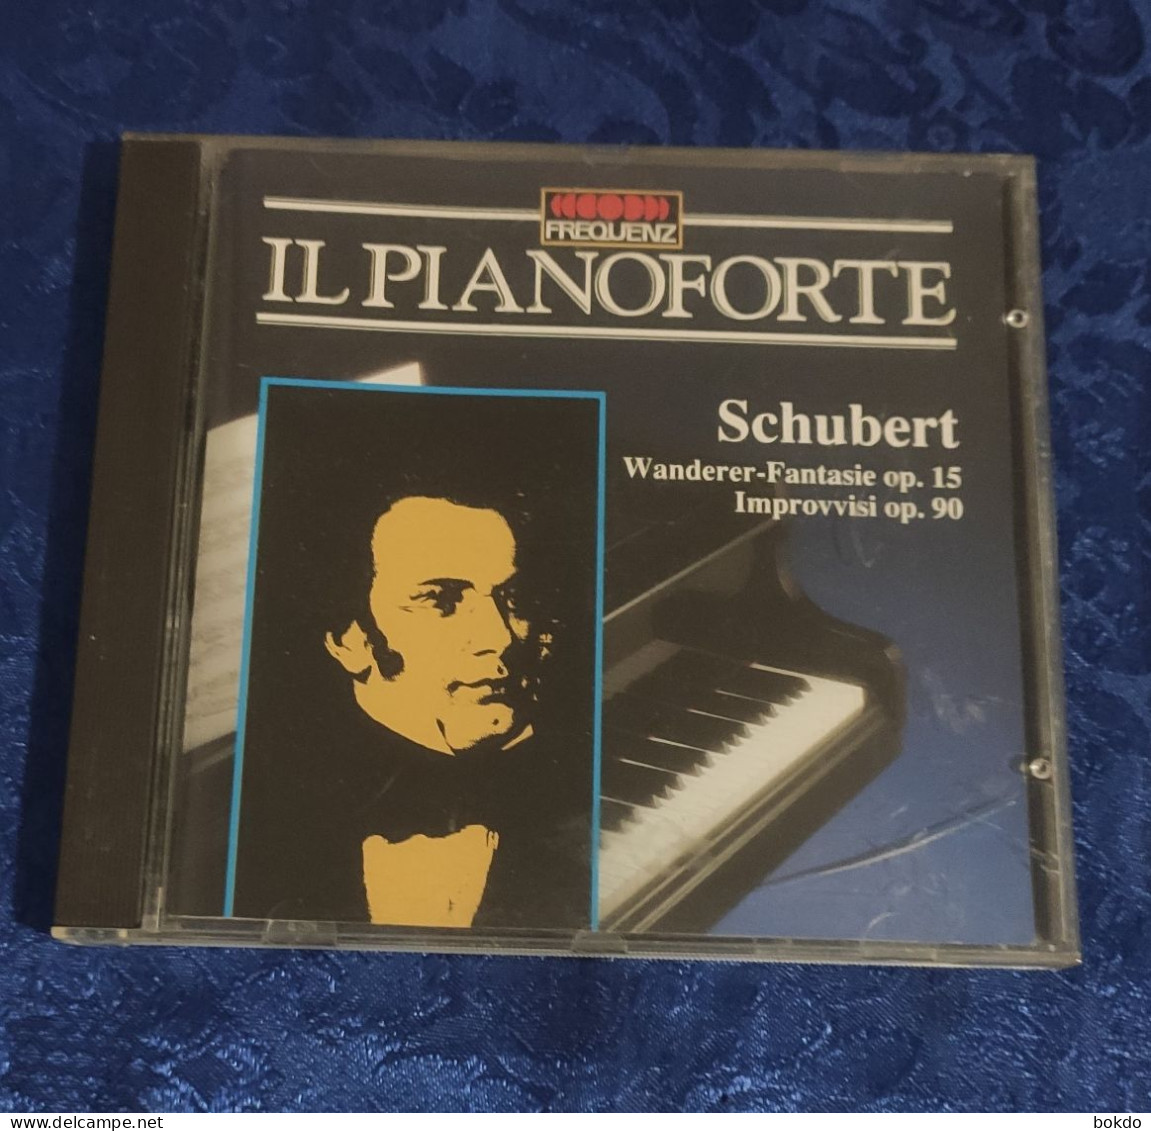 IL PIANOFORTE - Franz Schubert - Klassiekers